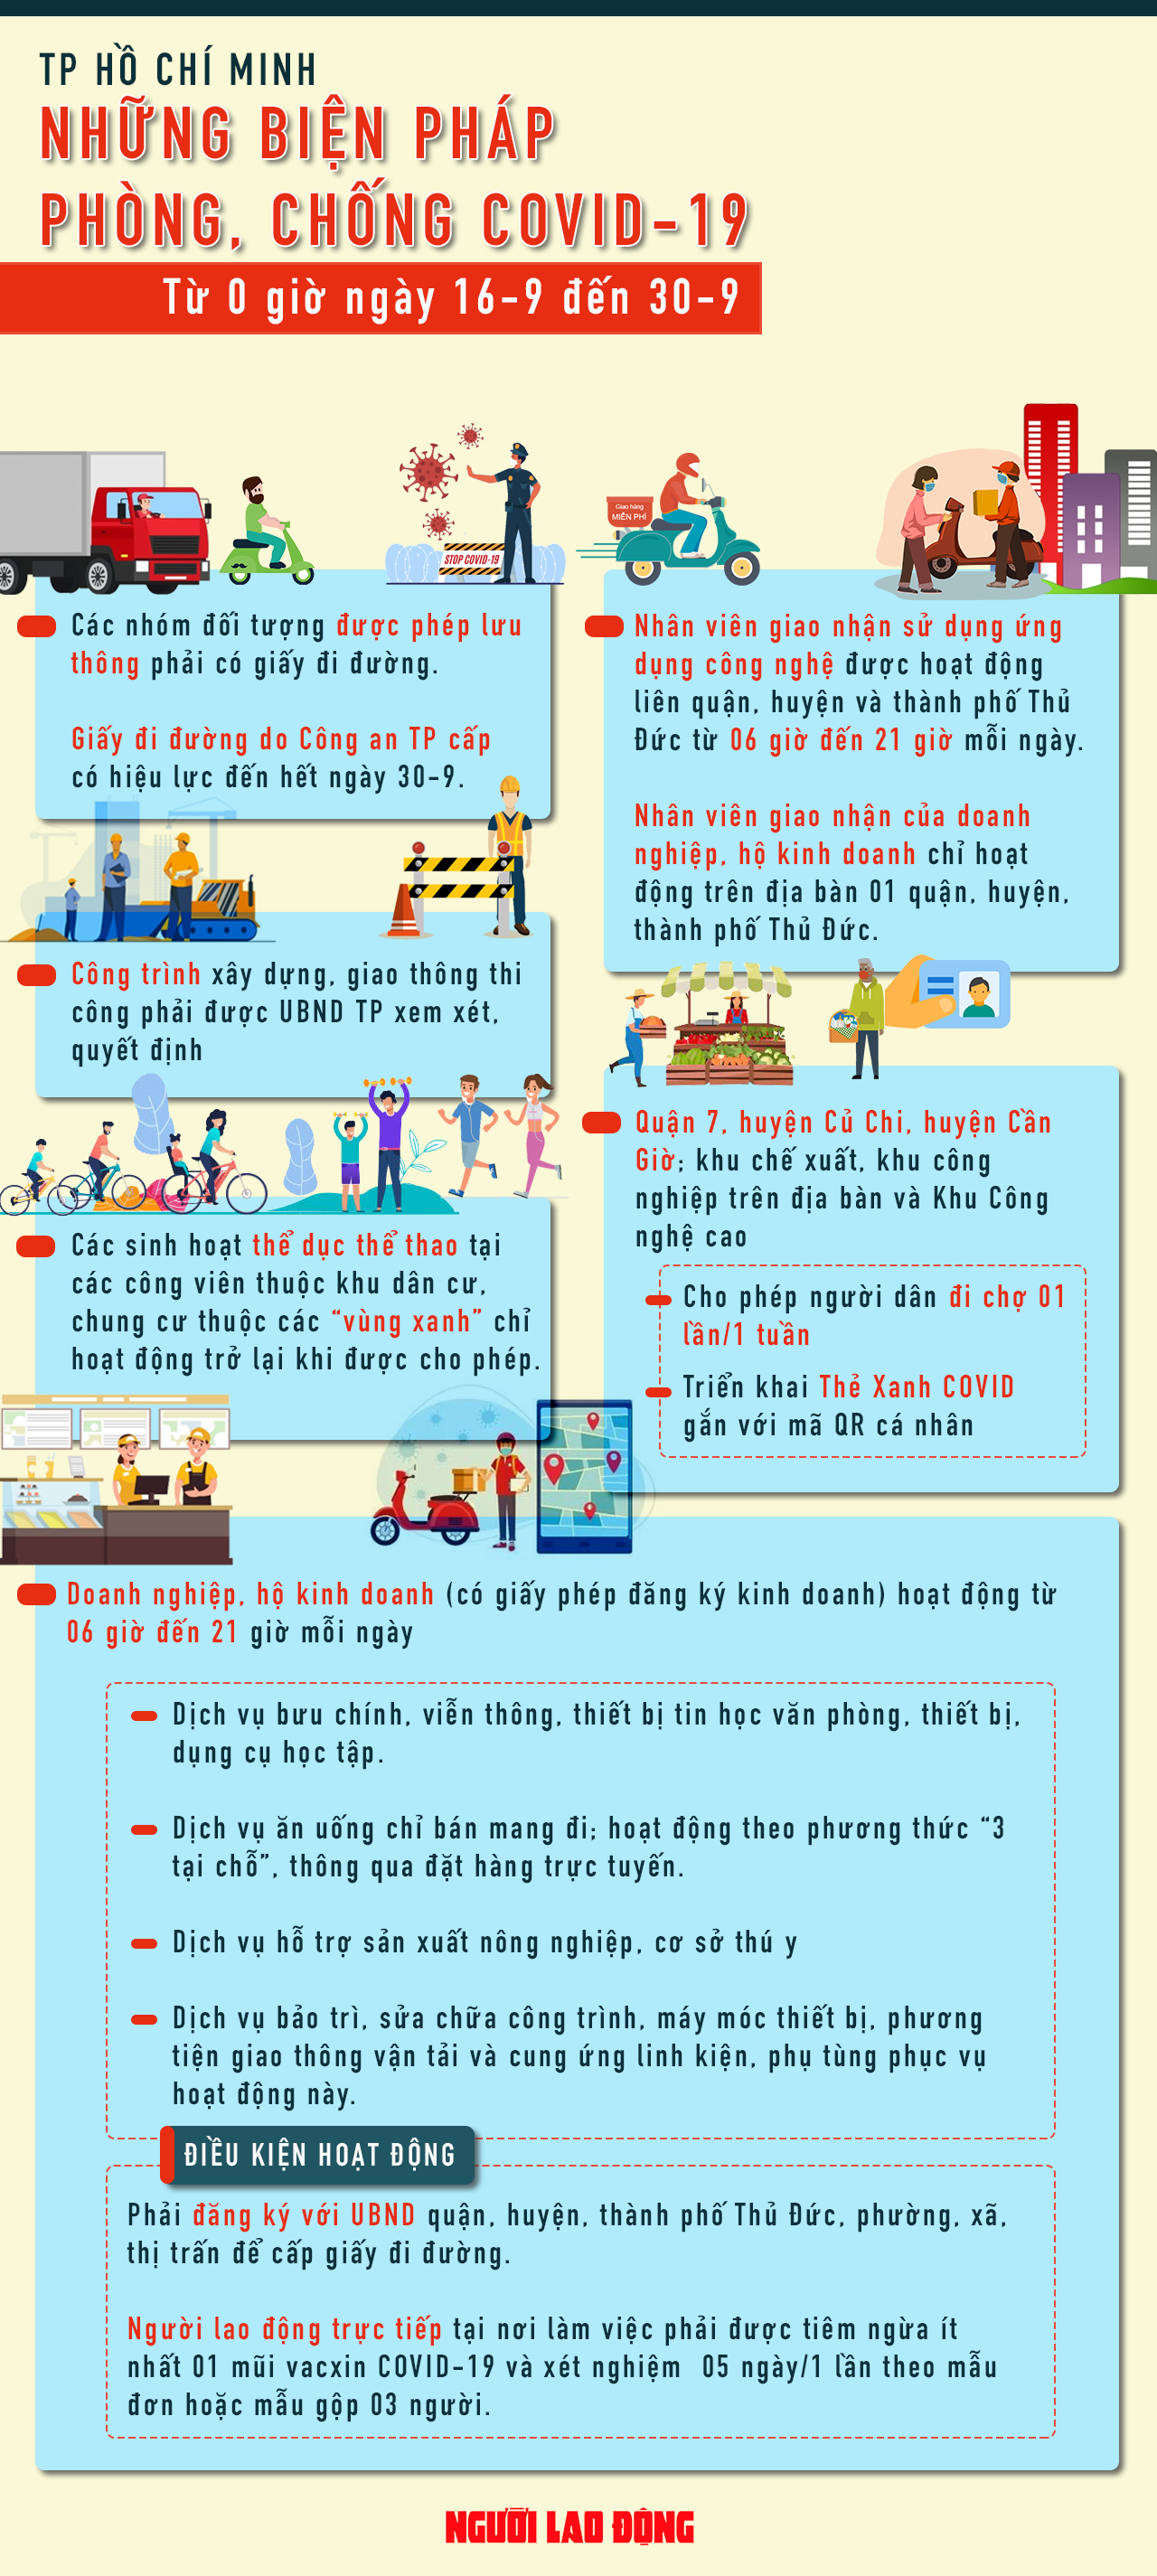 [Infographic] TP HCM: Những điều người dân cần biết sau ngày giãn cách 15-9 - 1